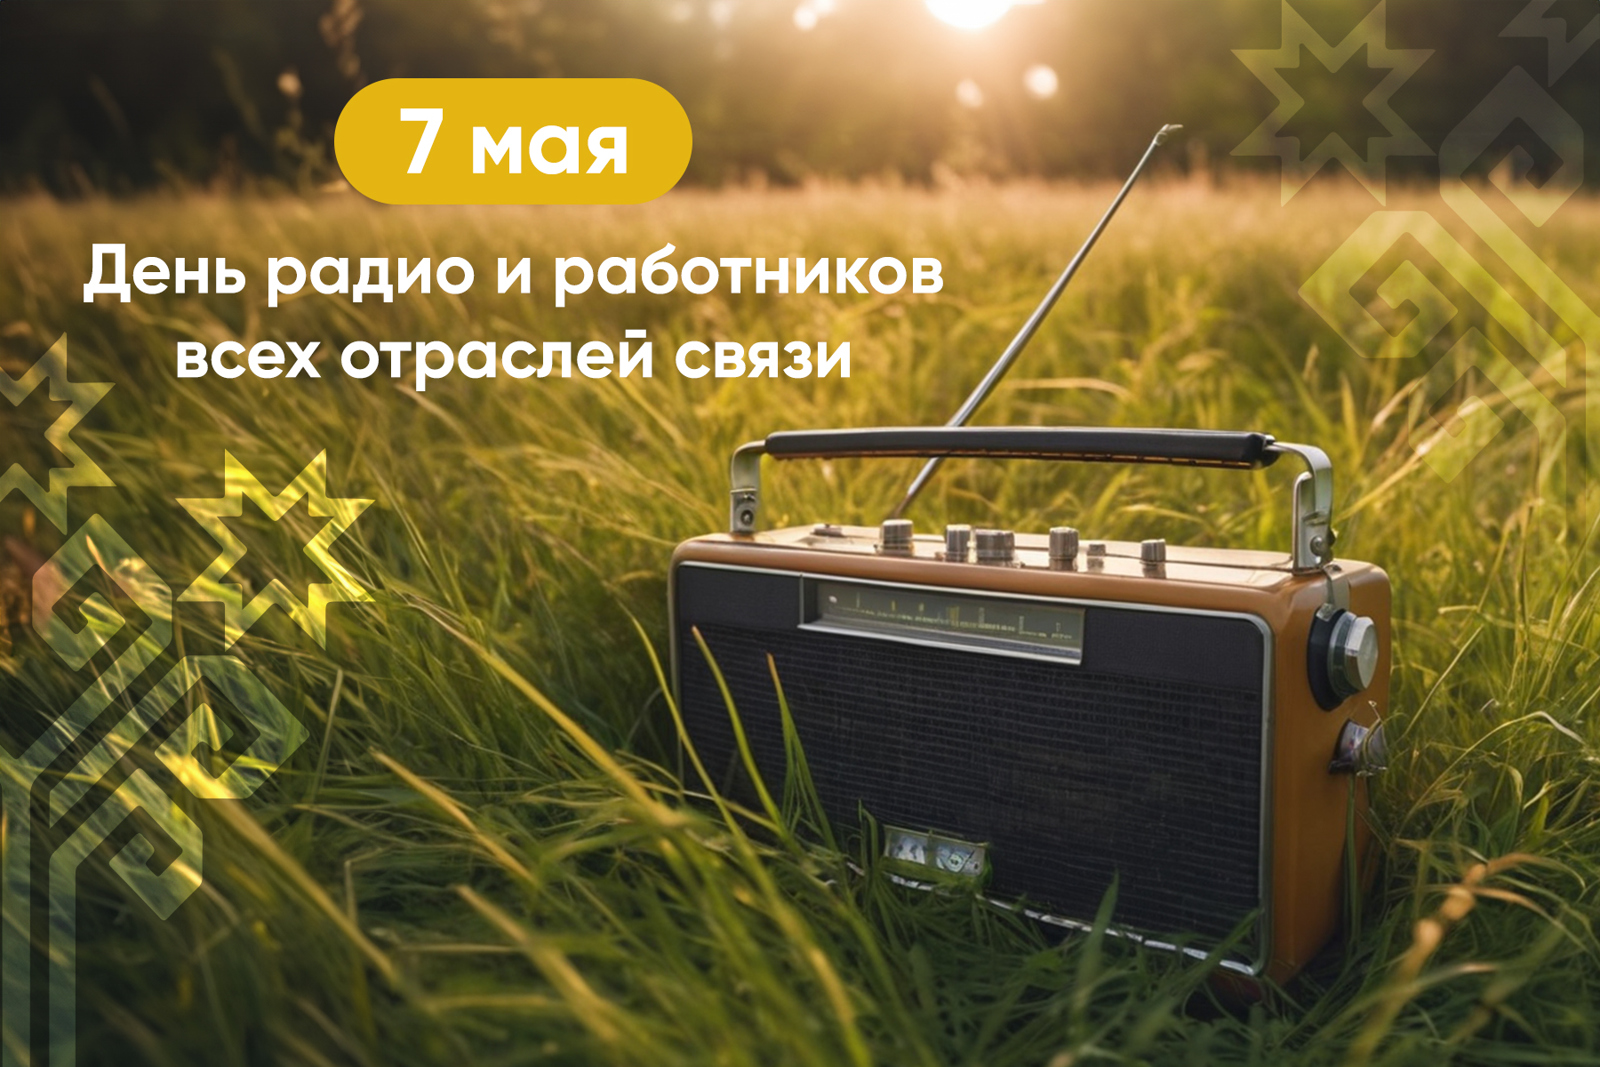 Олег Николаев поздравляет с Днем радио и работников всех отраслей связи